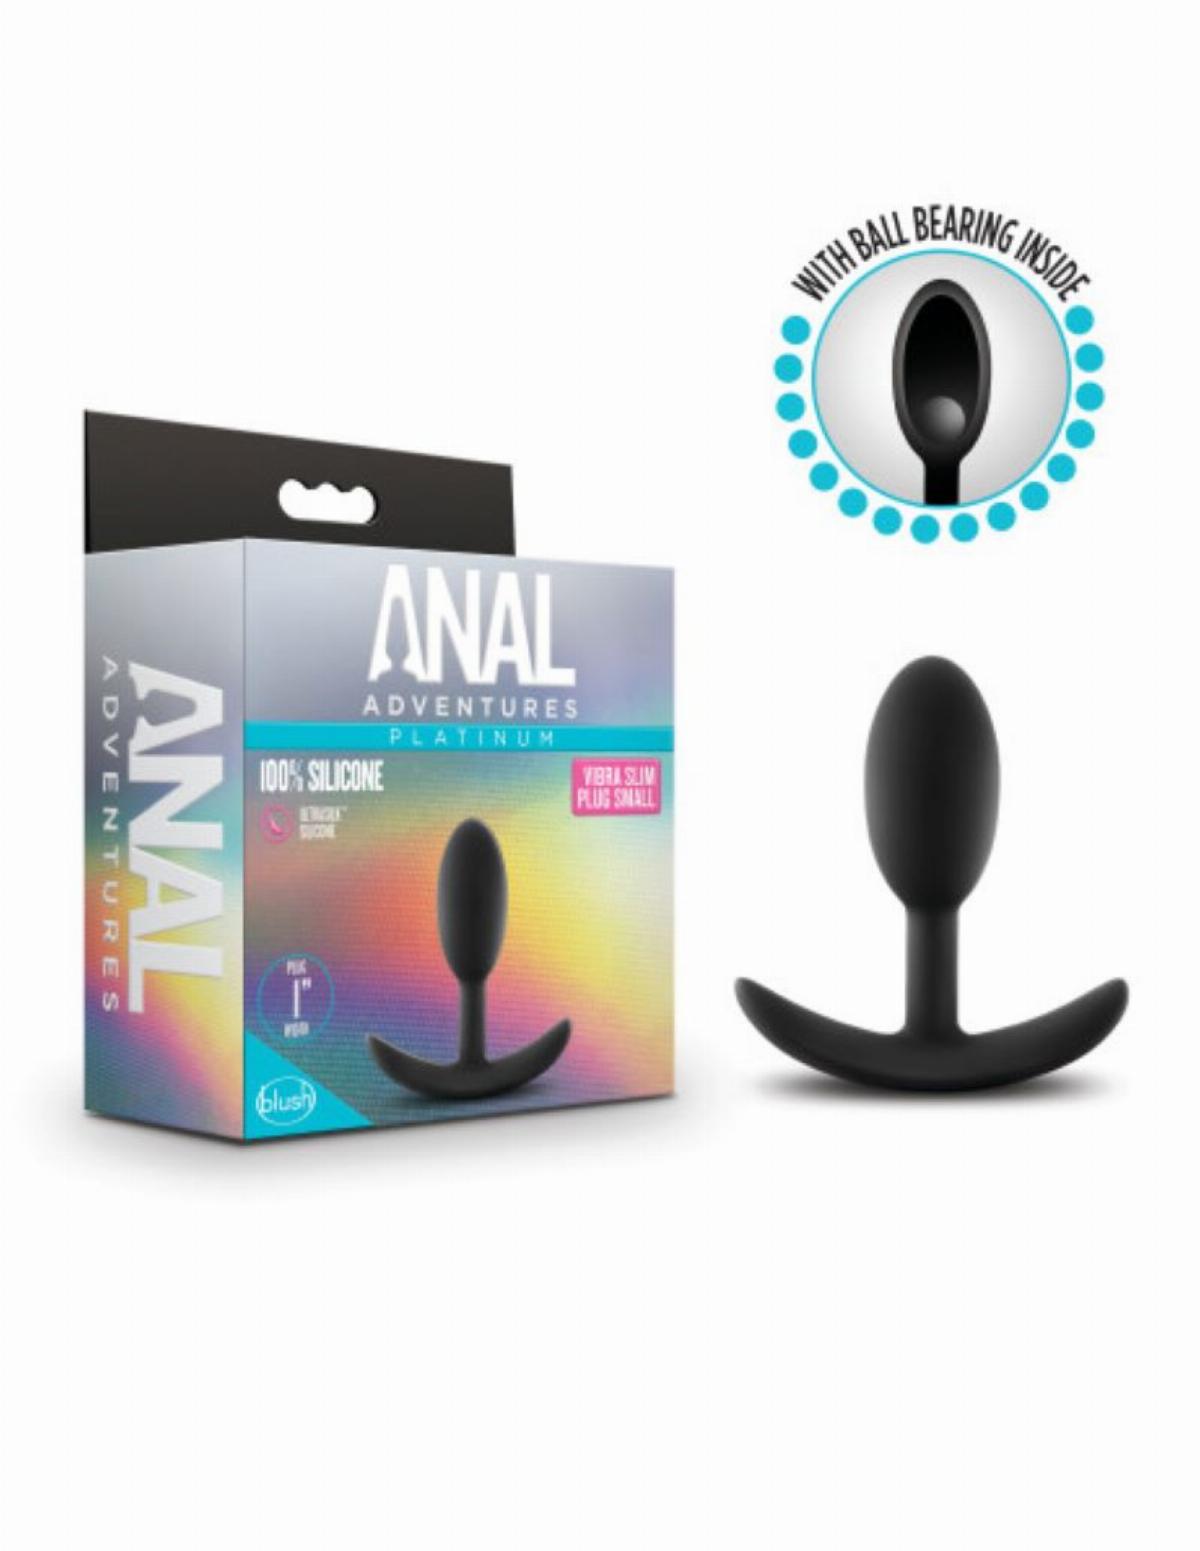 Zwarte butt plug van het merk Anal Advertures. De butt plug heeft een breed handvat en verzwaarde bal binnenin voor extra genot. Te koop bij Flavourez.